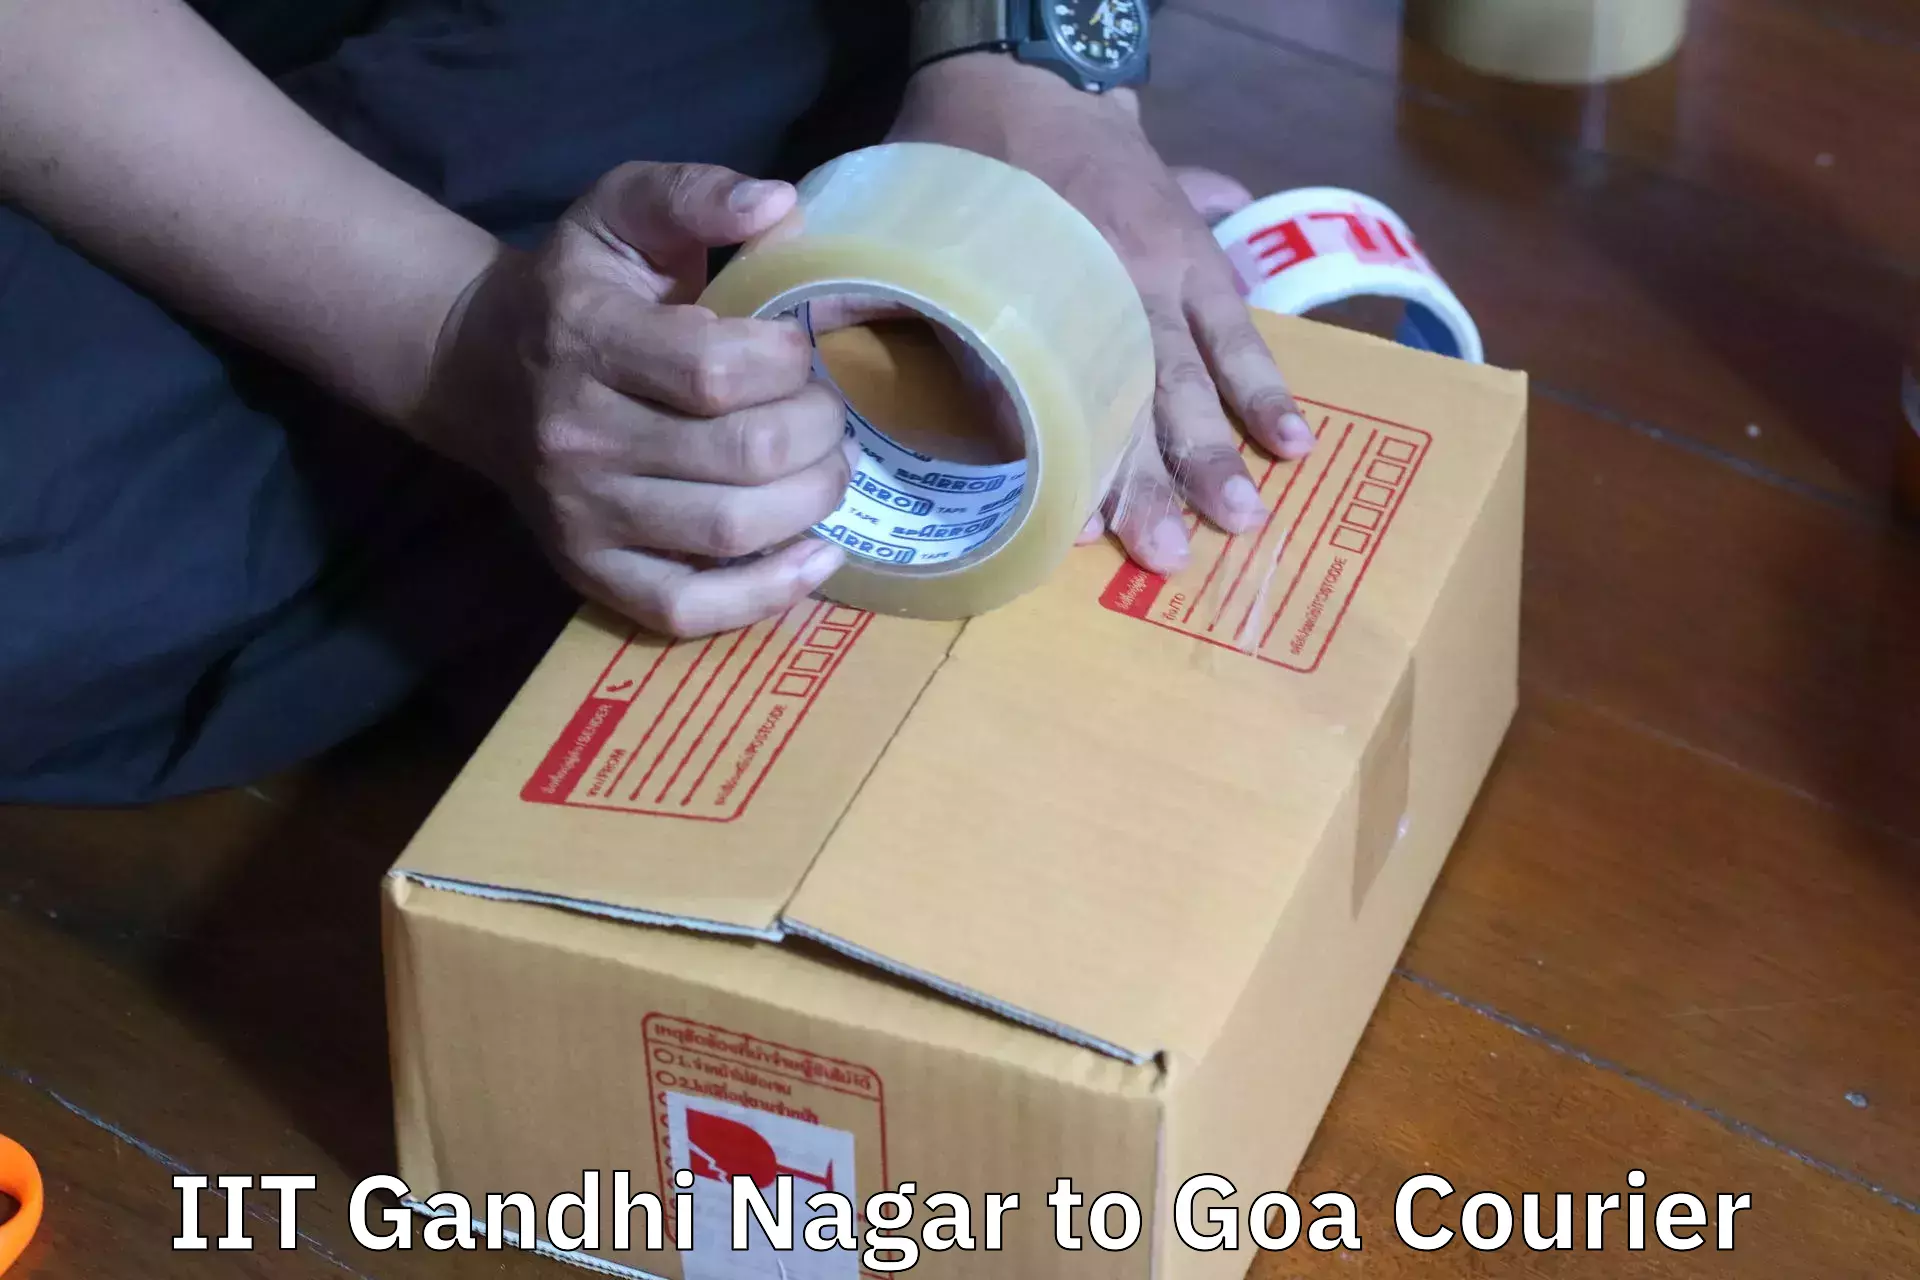 Efficient relocation services IIT Gandhi Nagar to NIT Goa